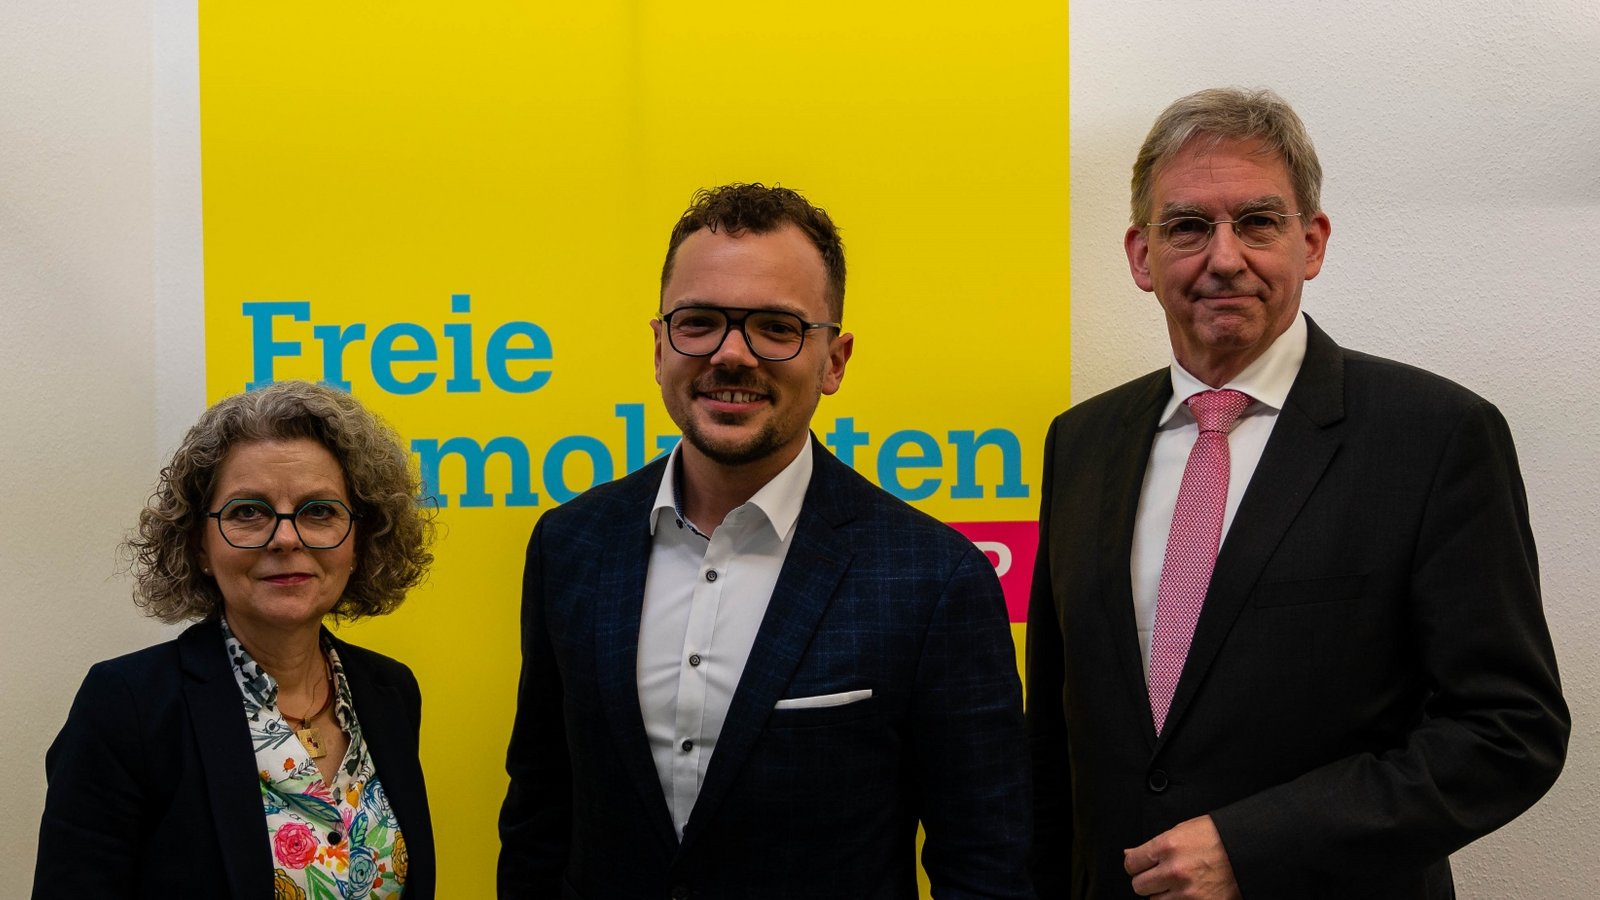 Europakandidat Rick Kirstein (Mitte) mit der FDP-Kreisvorsitzenden Viola Noack und Kreisgeschäftsführer Wolfgang Vogt.  Foto: p